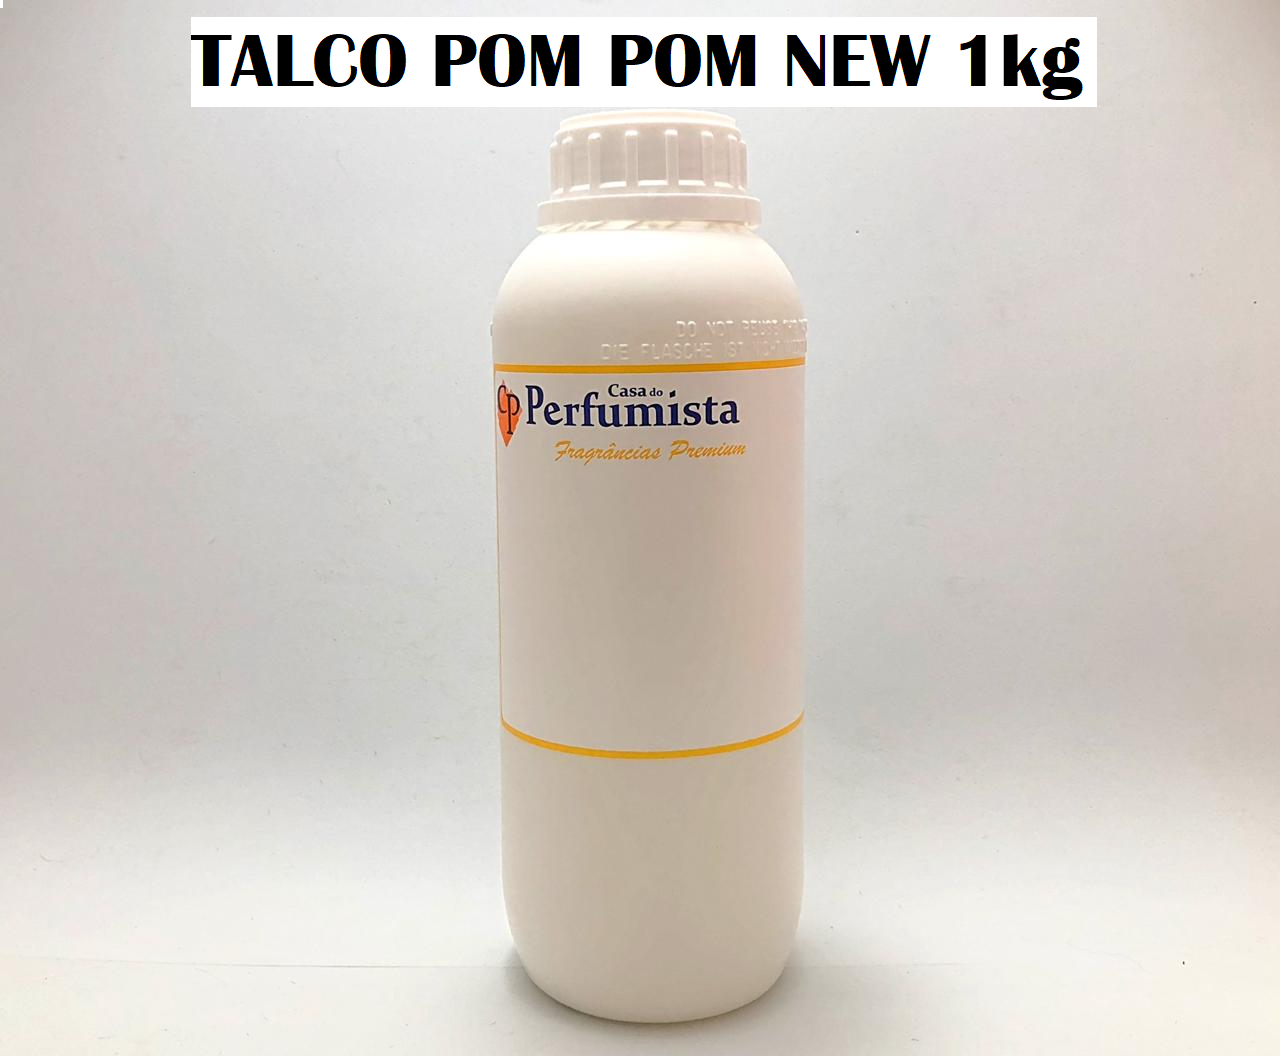 TALCO POM POM NEW - 1kg